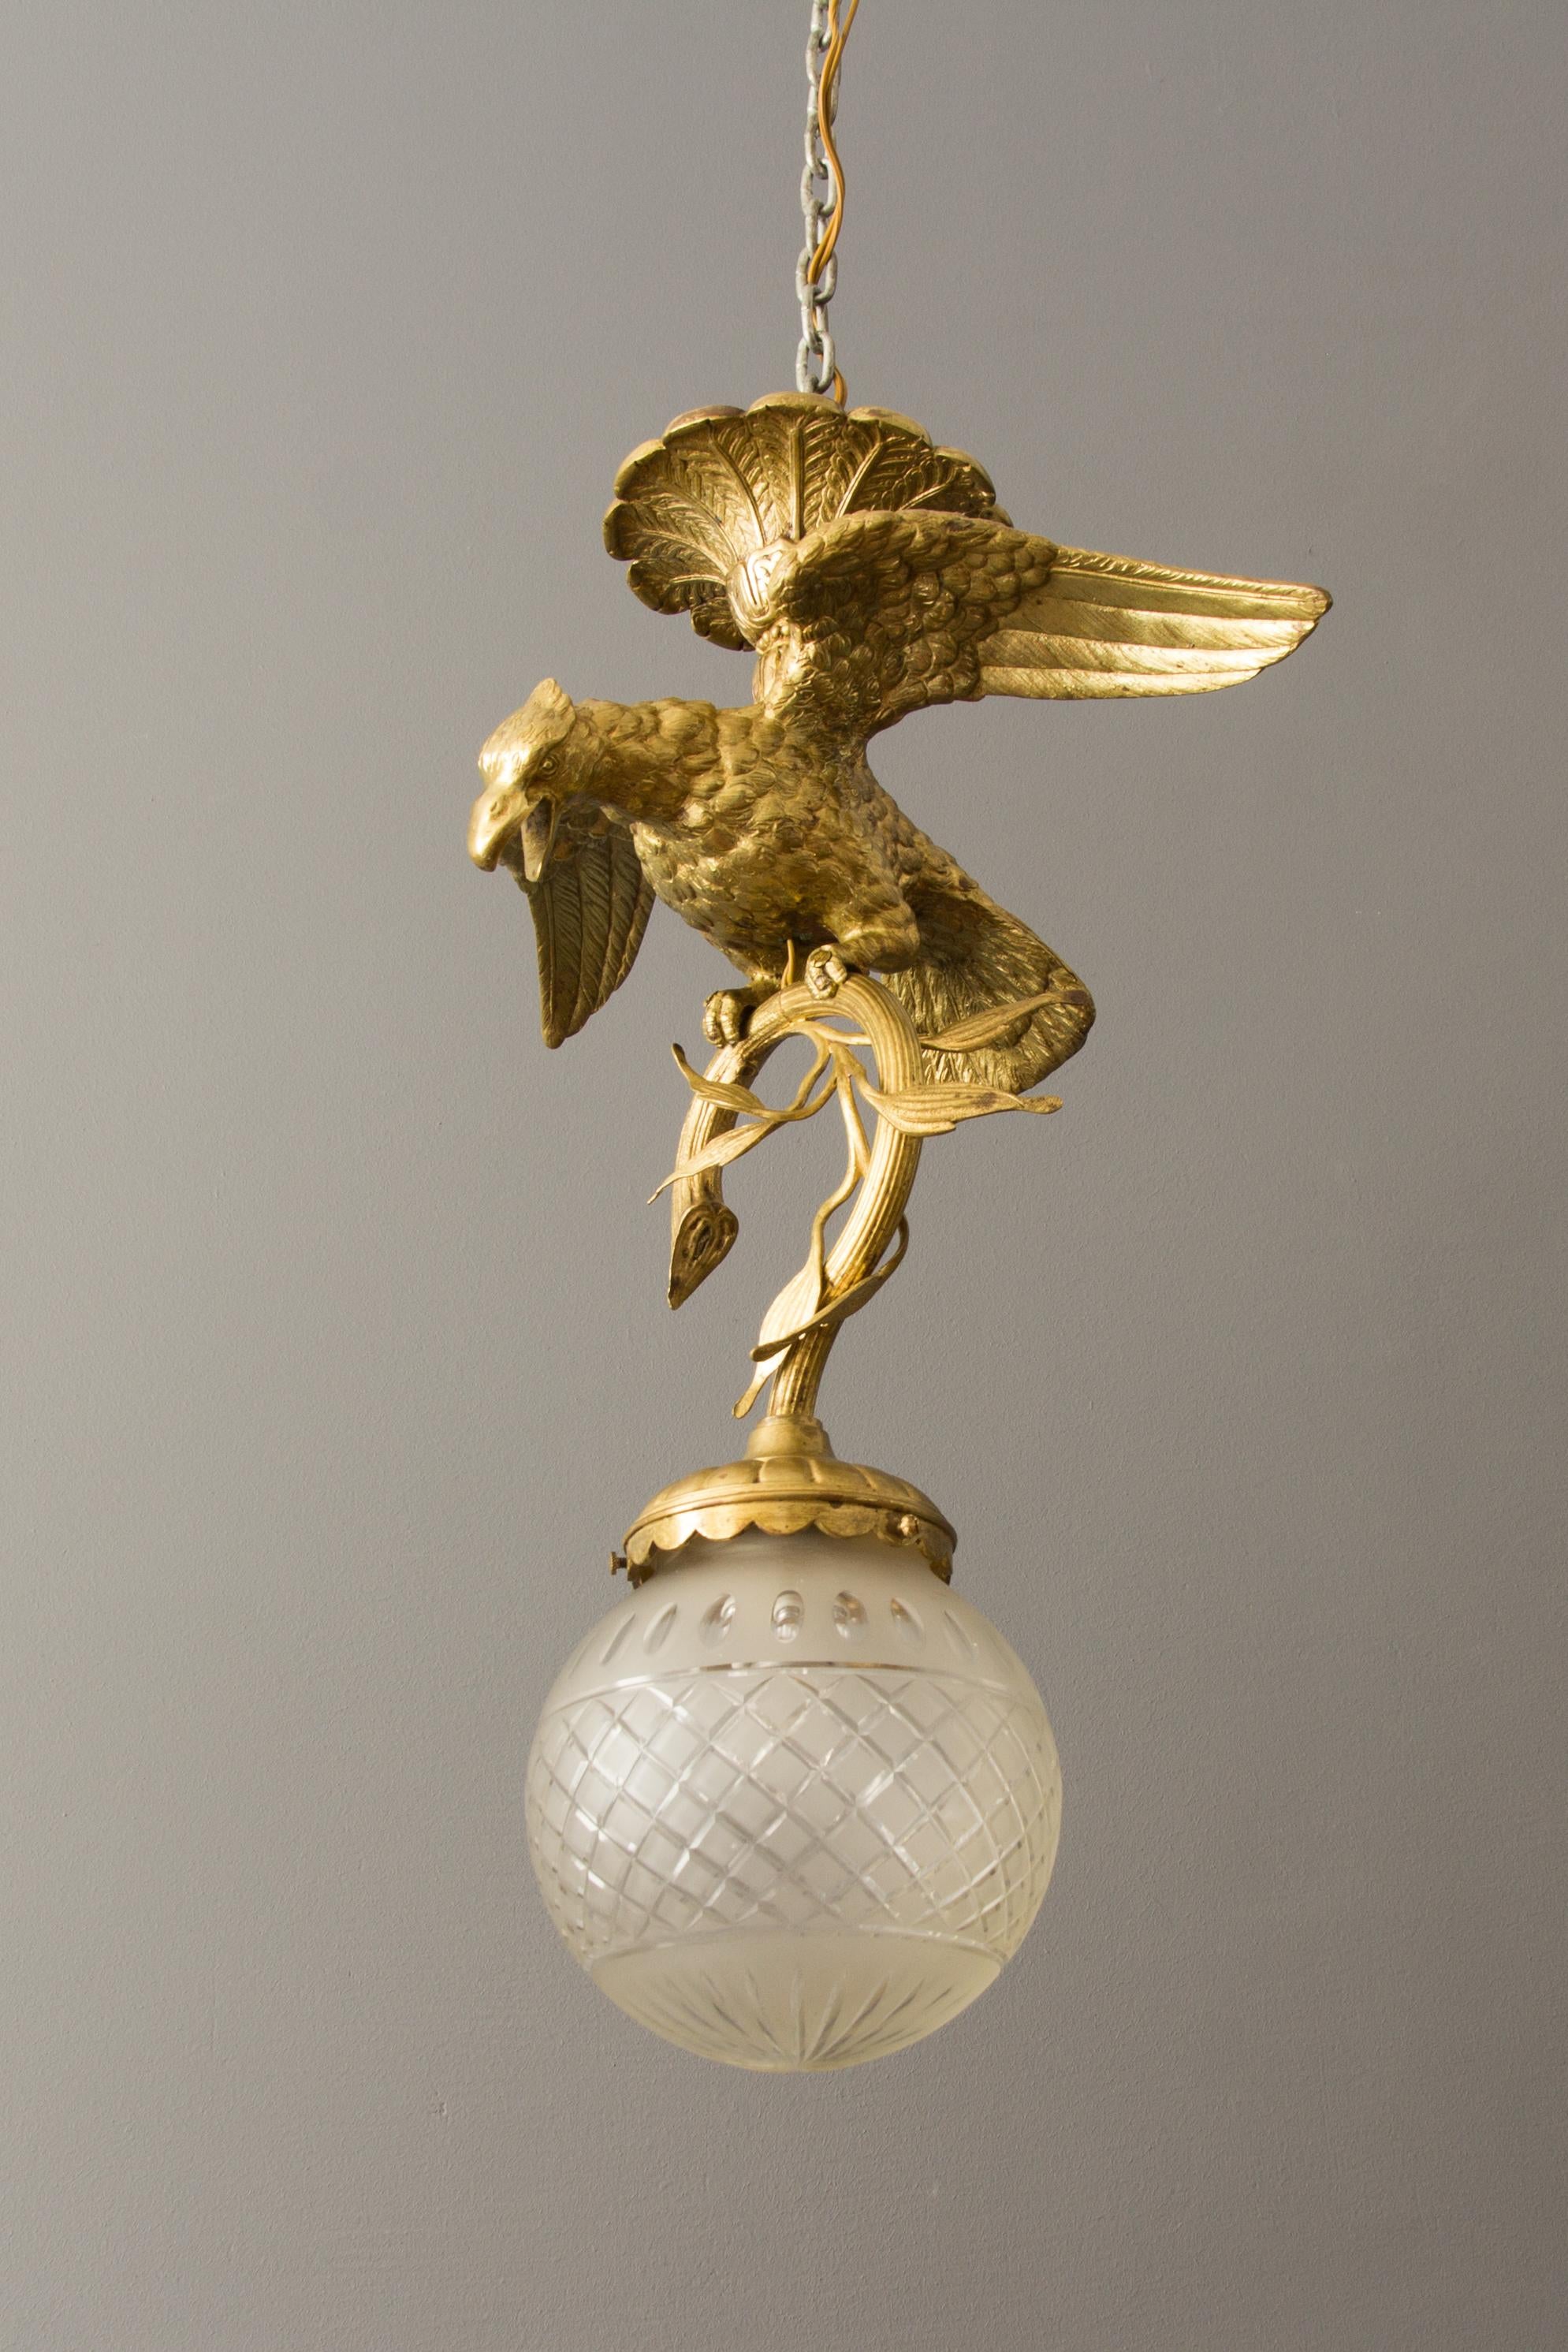 Wunderschöner massiver Bronzeleuchter aus den 1920er Jahren - Adler auf einem Ast - eine Halterung für den Milchglaslampenschirm. Die Hängeleuchte hat eine Fassung für eine Glühbirne der Größe E27. 
Maßnahmen: Höhe: 52 cm / 20::4 Zoll; Durchmesser: